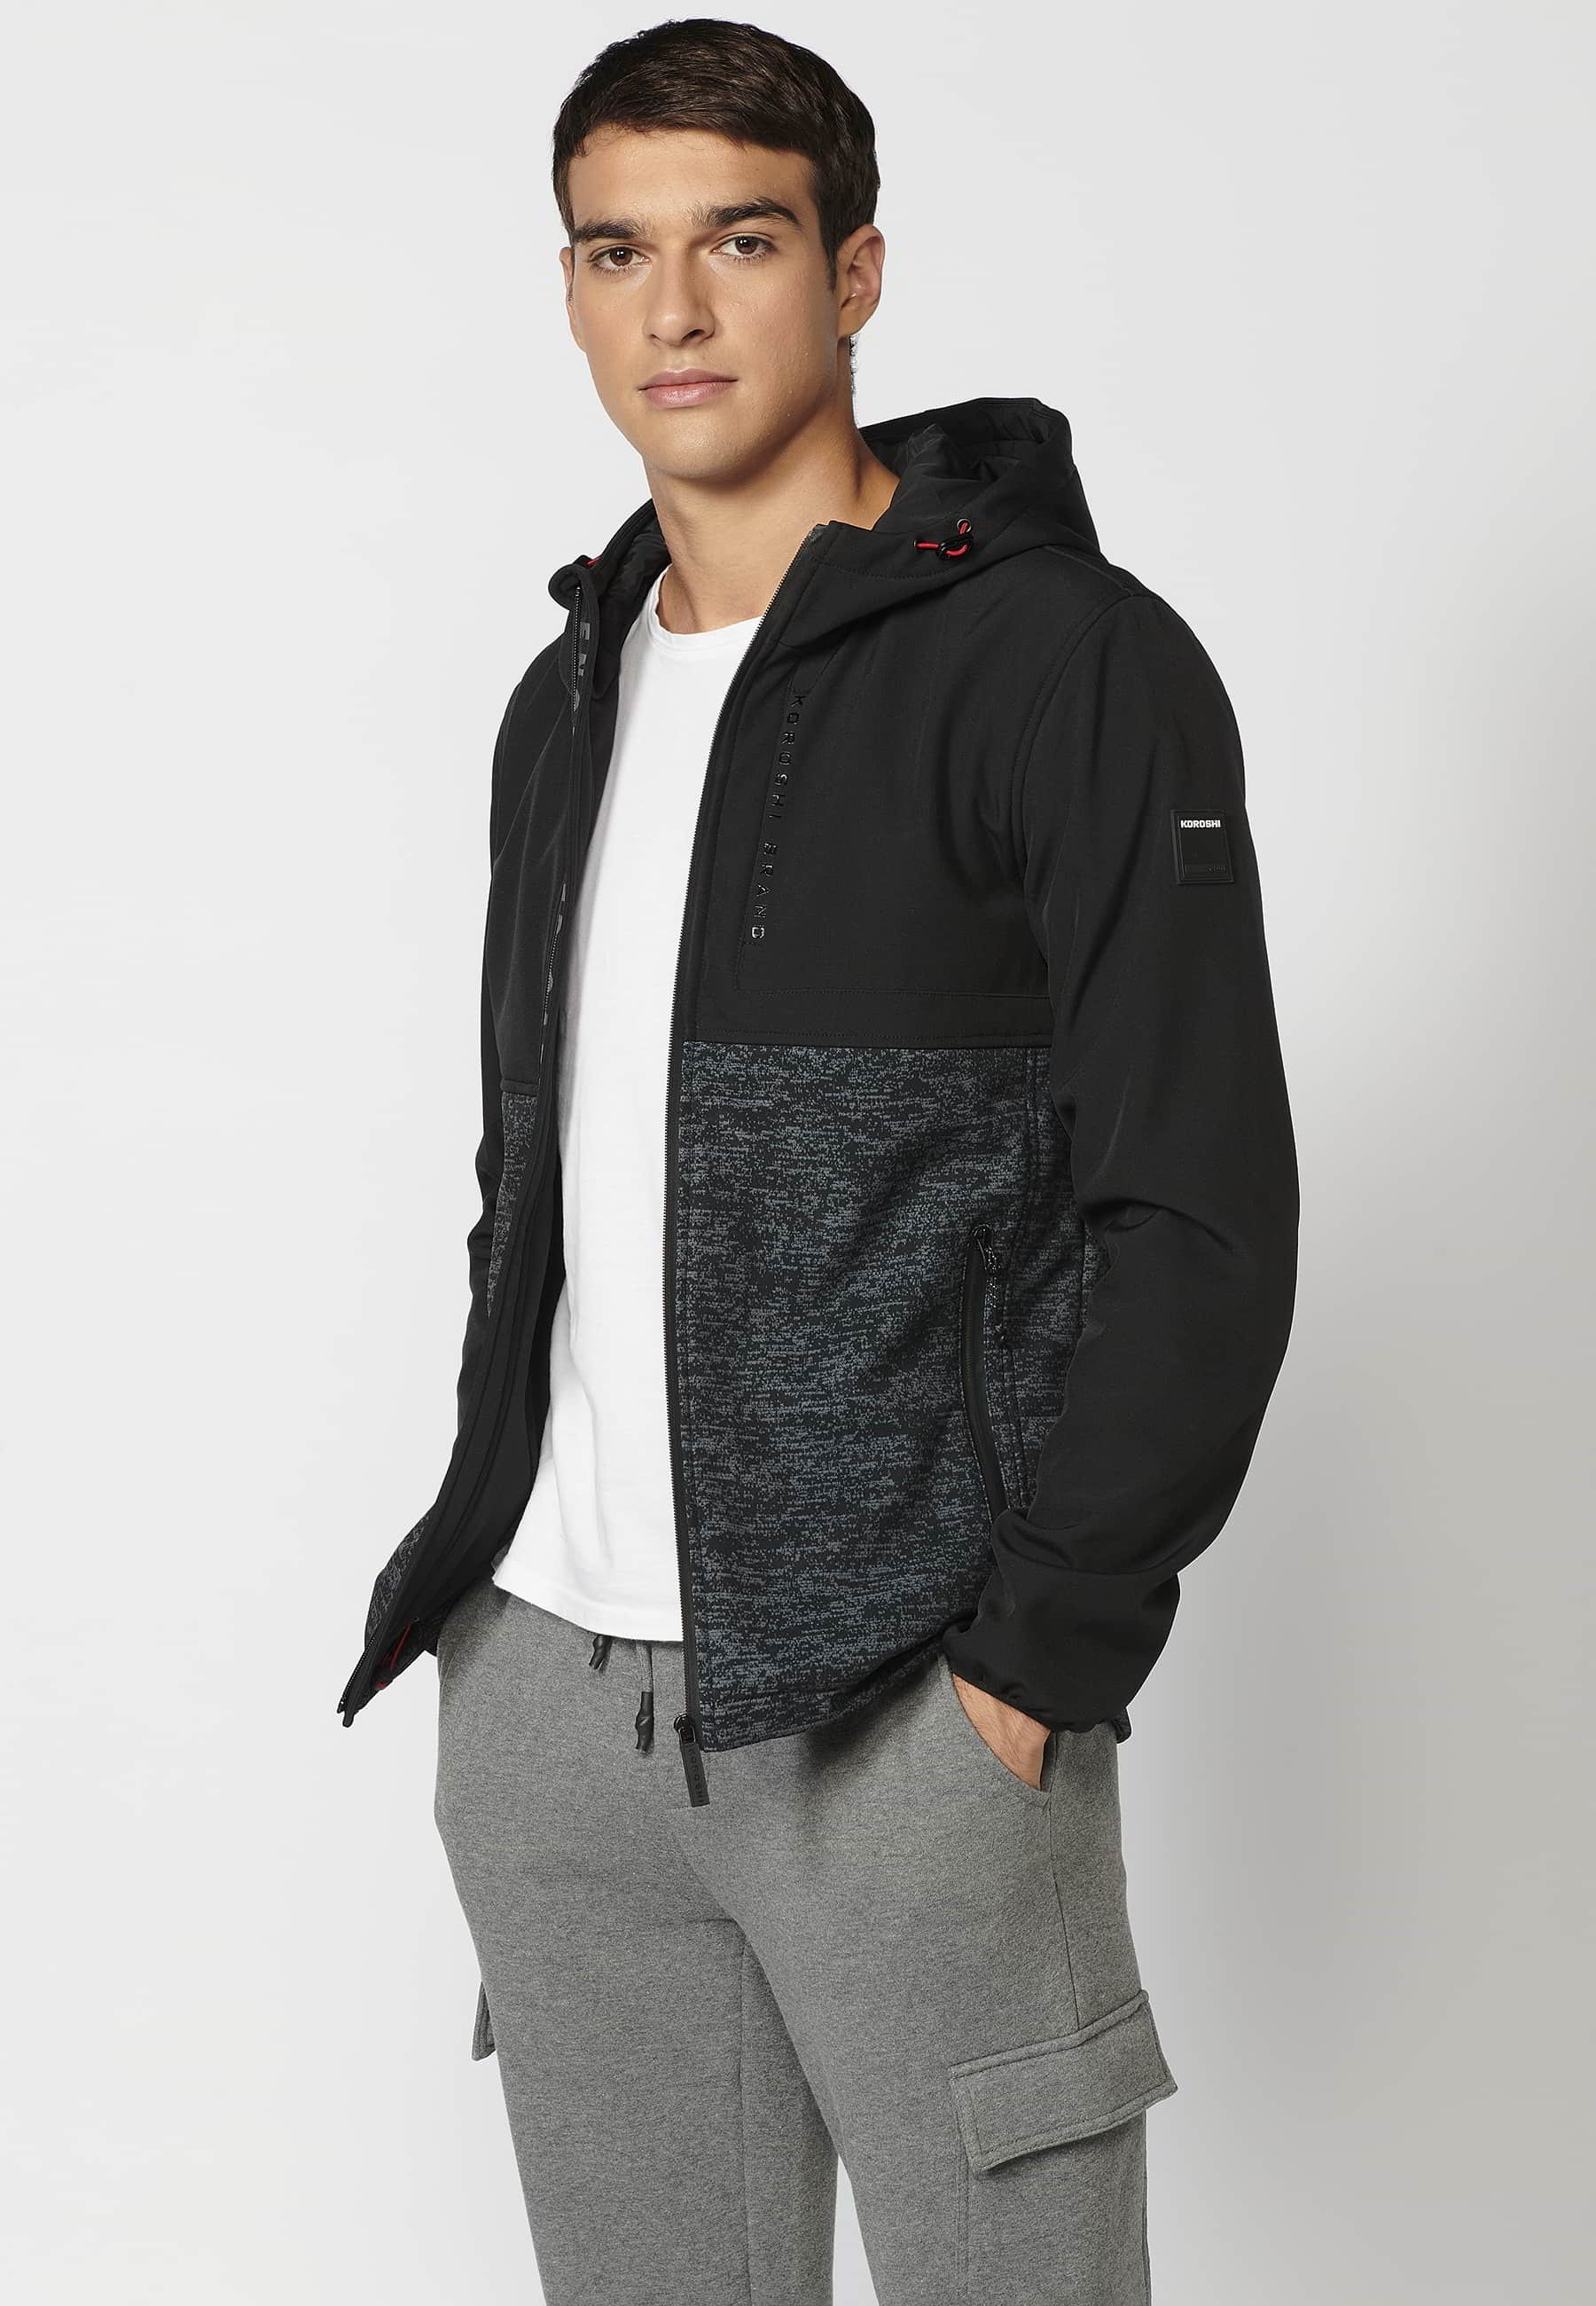 Koroshi Brand Shops on X: Nuestras nuevas chaquetas para hombre te van a  entusiasmar y más si en esta Nueva Colección puedes usar el código KORO3X2  para llevarte 3 prendas pagando sólo